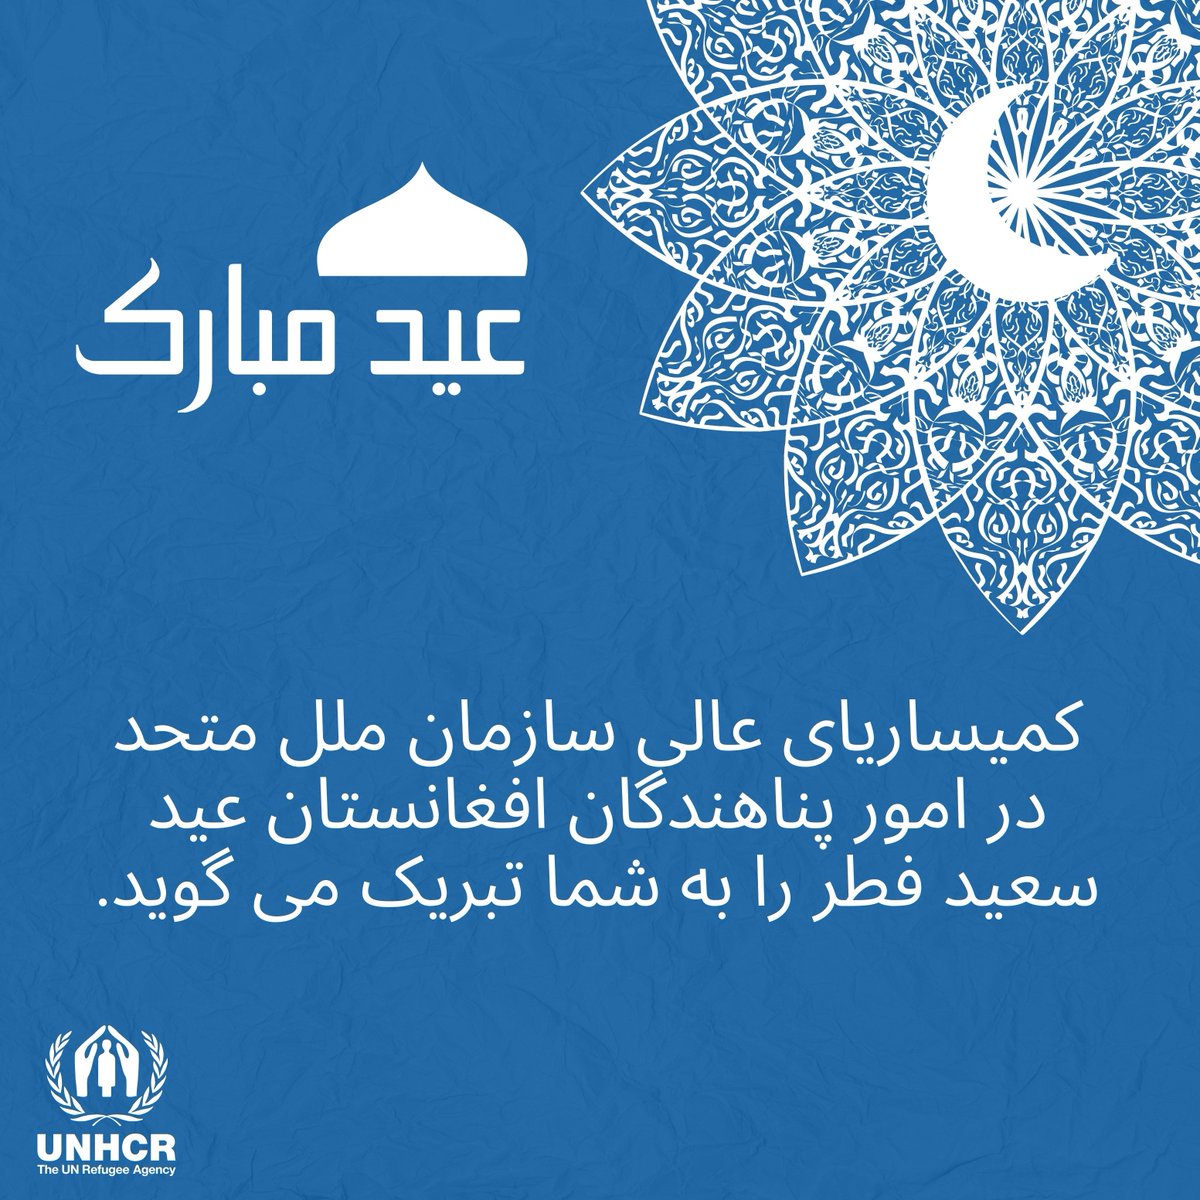 UNHCR Afghanistan (@UNHCRAfg) on Twitter photo 2024-04-10 02:11:57